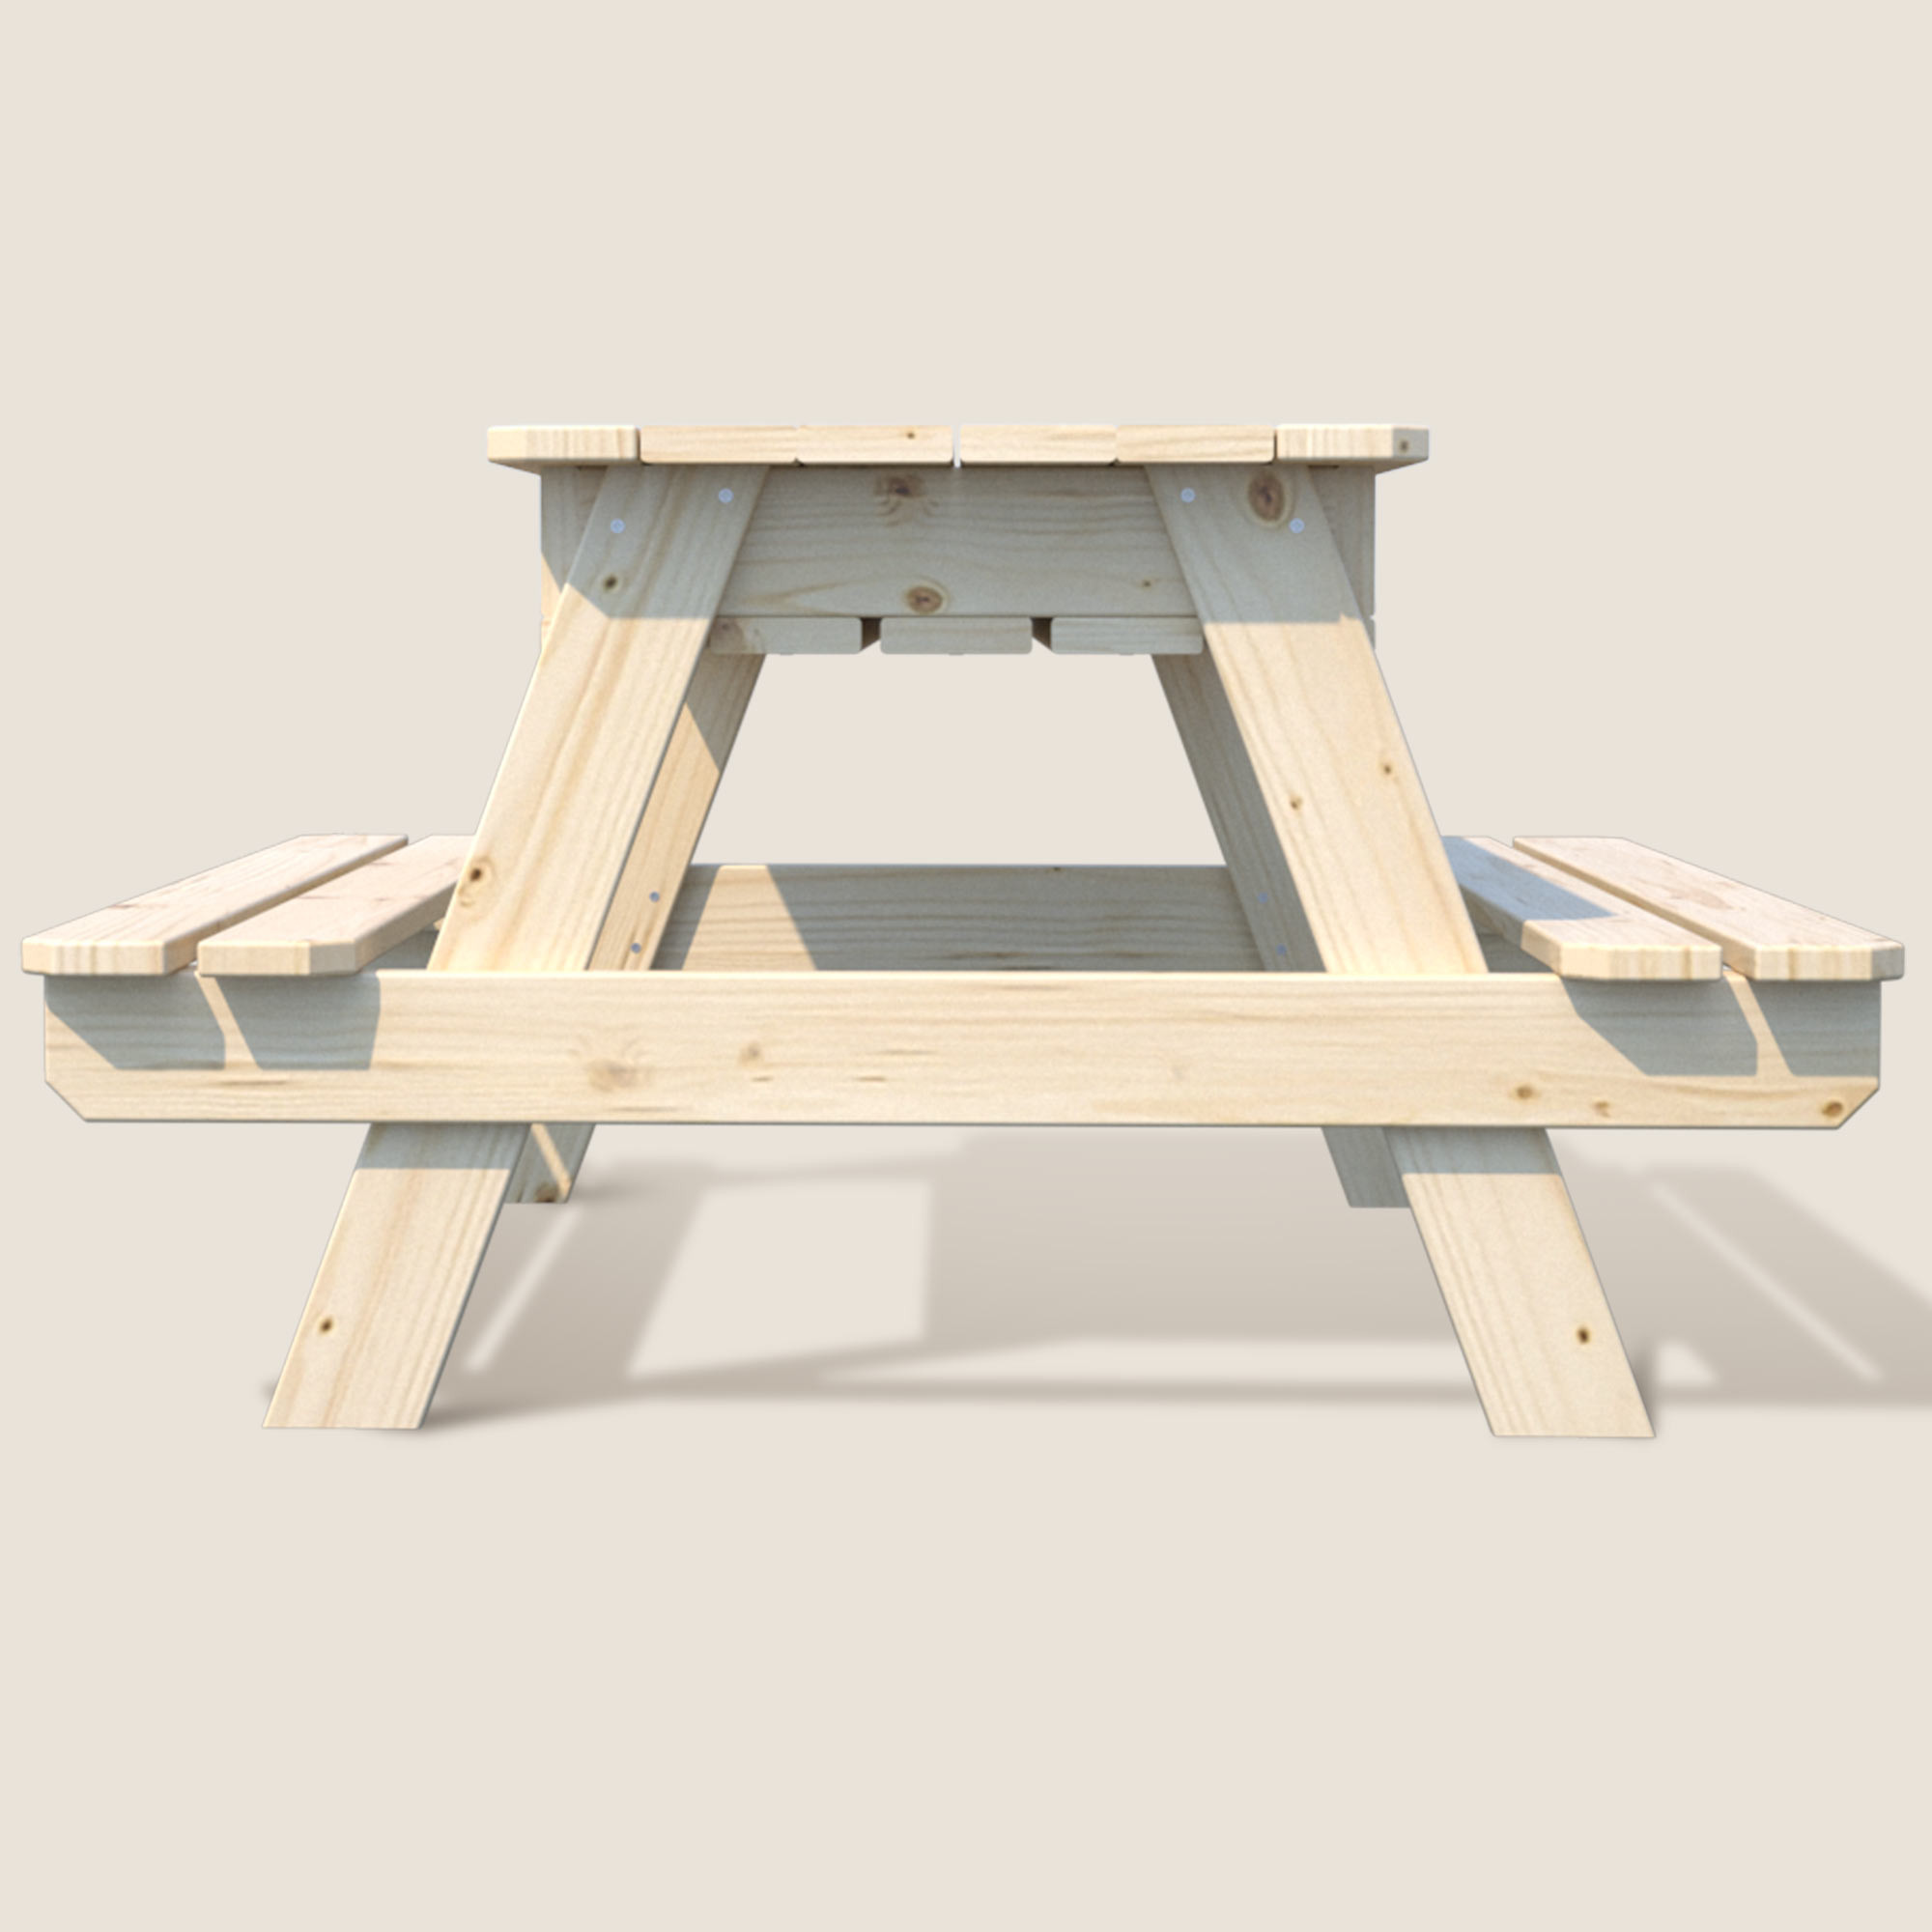 Soulet Table en bois avec bac à sable intégré pour enfant 90 x 91,5